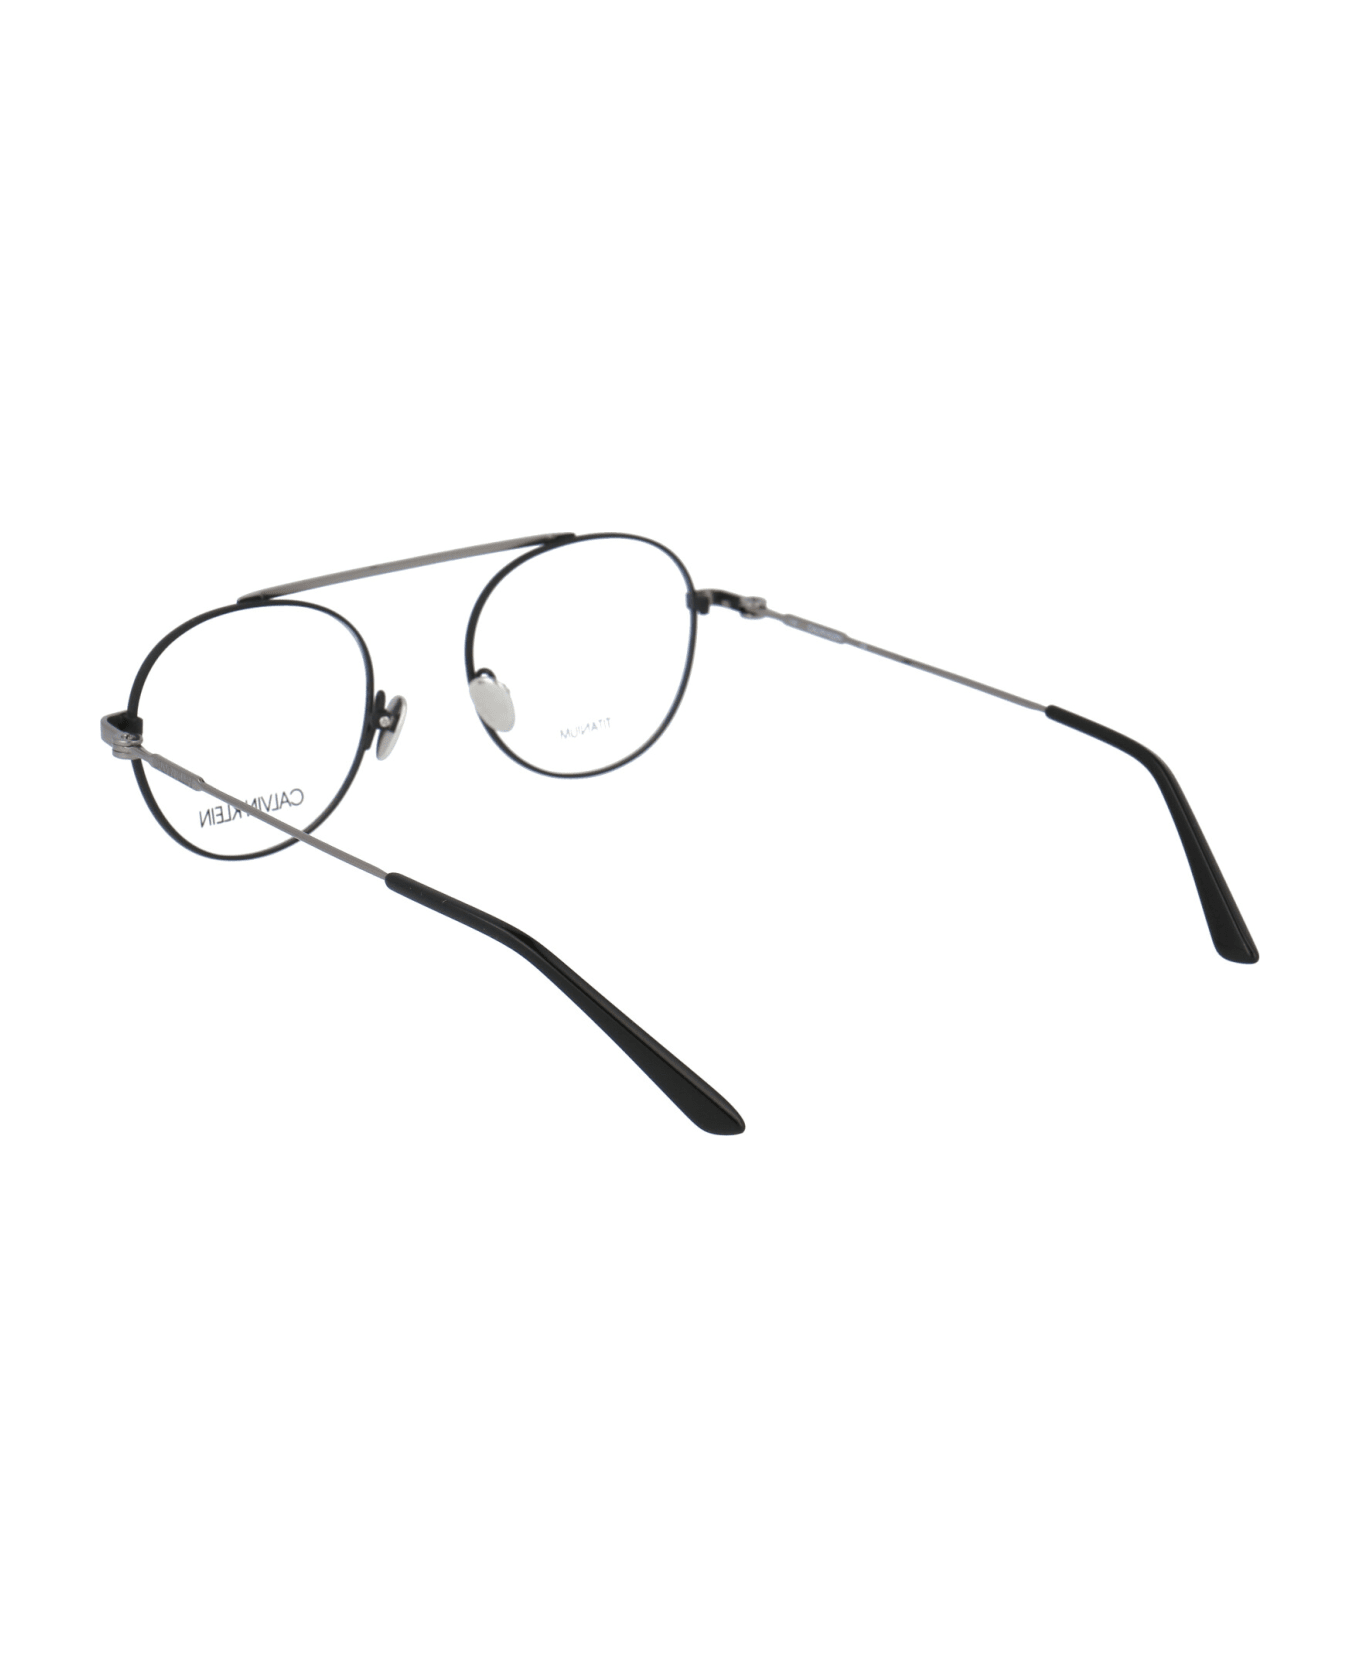 Calvin Klein Ck19151 Glasses - 001 MATTE BLACK アイウェア